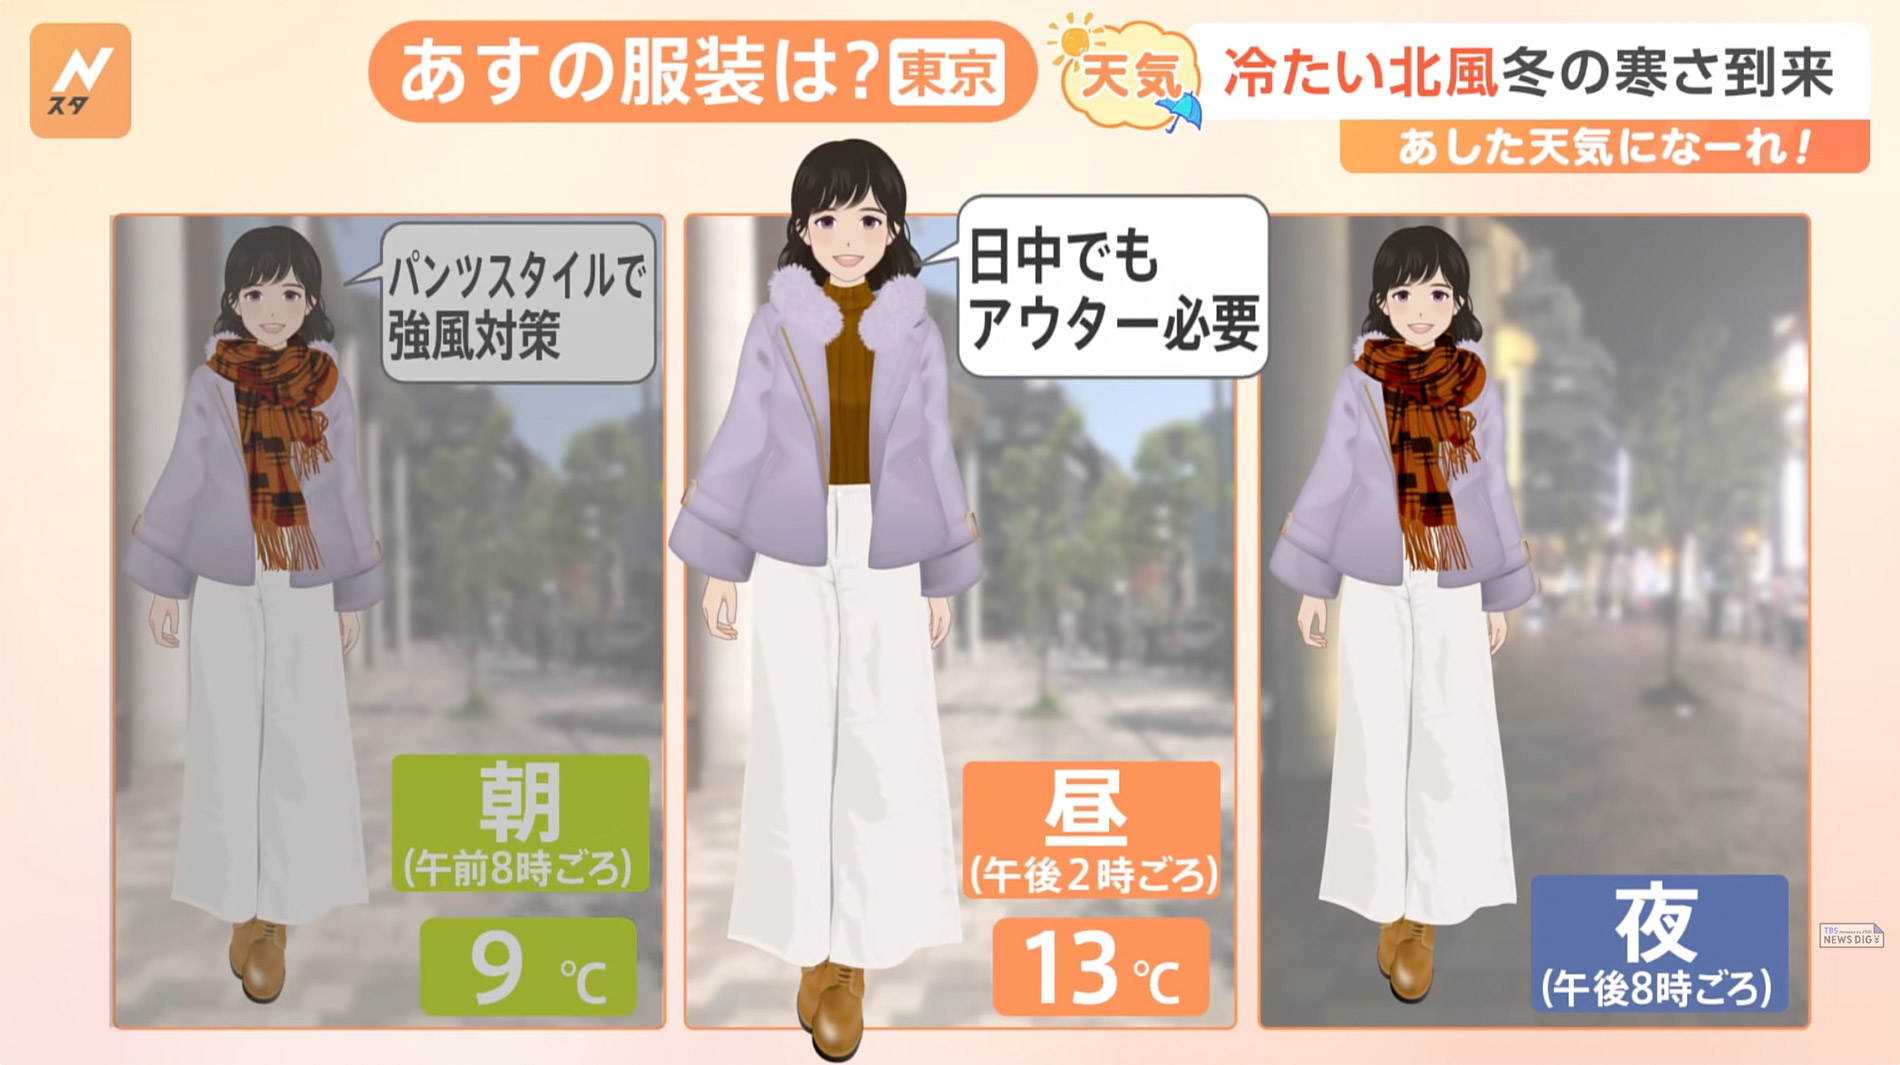 Eine Mangafigur soll beim japanischen Wetterbericht dabei helfen, die richtigen Klamotten für den Tag zu wählen. (Quelle: https://www.youtube.com/watch?v=MOAkp-xC3v8)